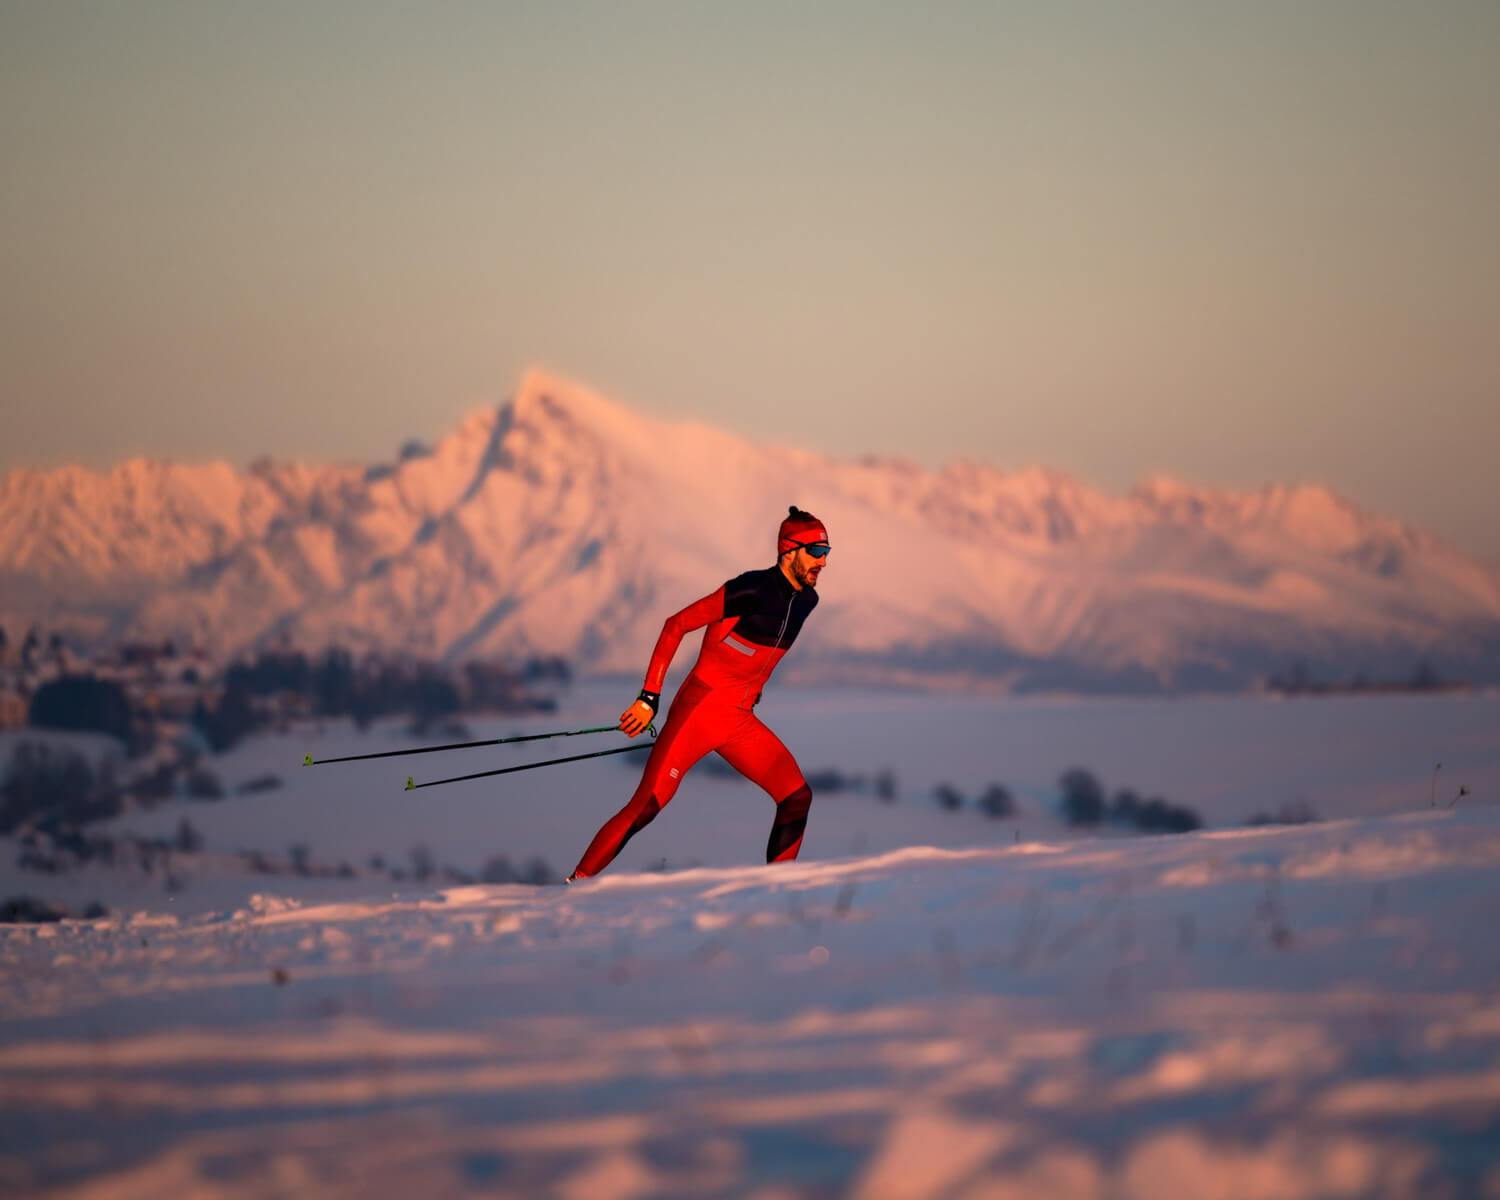 Jakub do svojej prípravy zahŕňa aj iné športové aktivity, ako primárny skialpinizmus.Tieto sekundárne aktivity mu pomáhajú zaťažiť systém inak a vo výsledku odtrénovať viac.